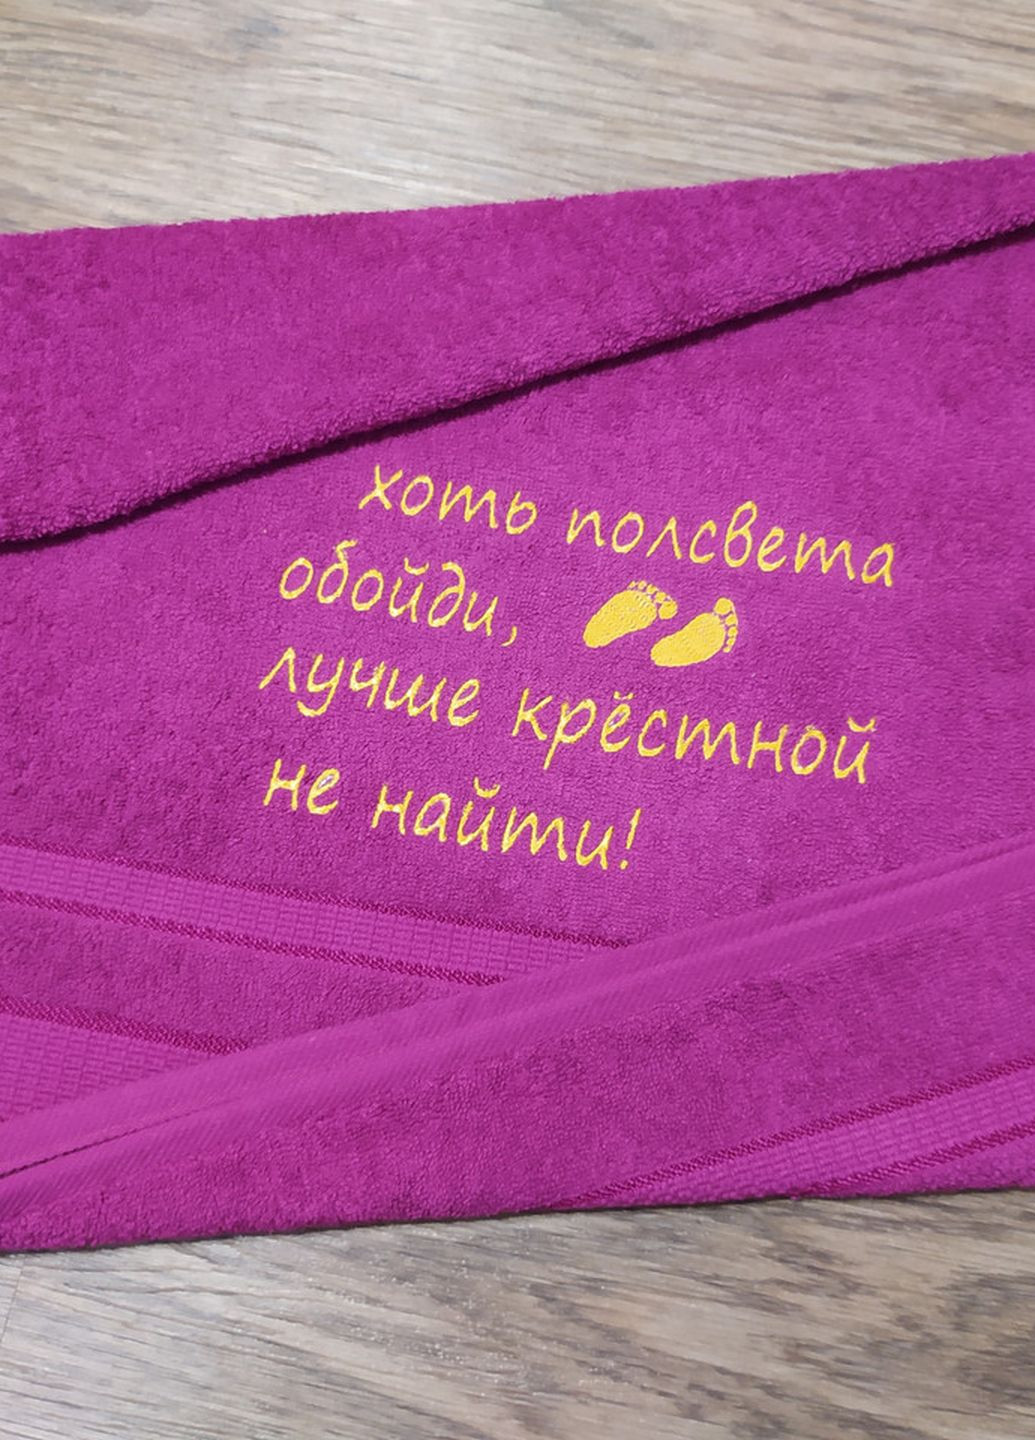 No Brand полотенце с вышивкой махровое лицевое 50*90 фуксия крестной маме куме 00092 однотонный фуксия производство - Украина